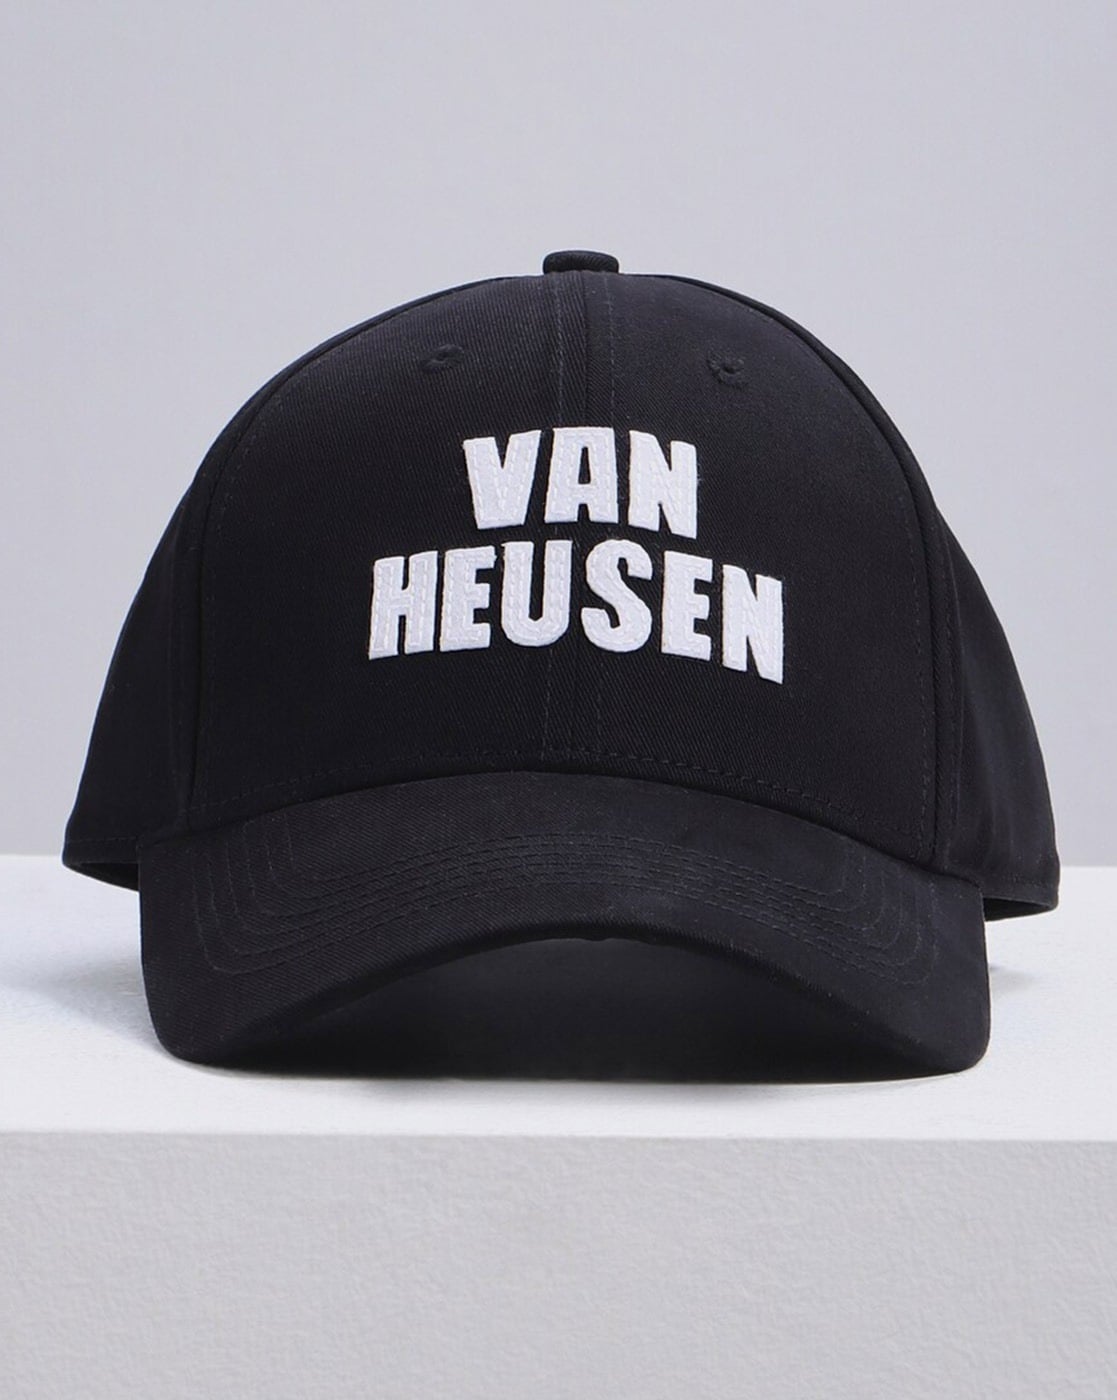 Buy Van Heusen online at Farmers